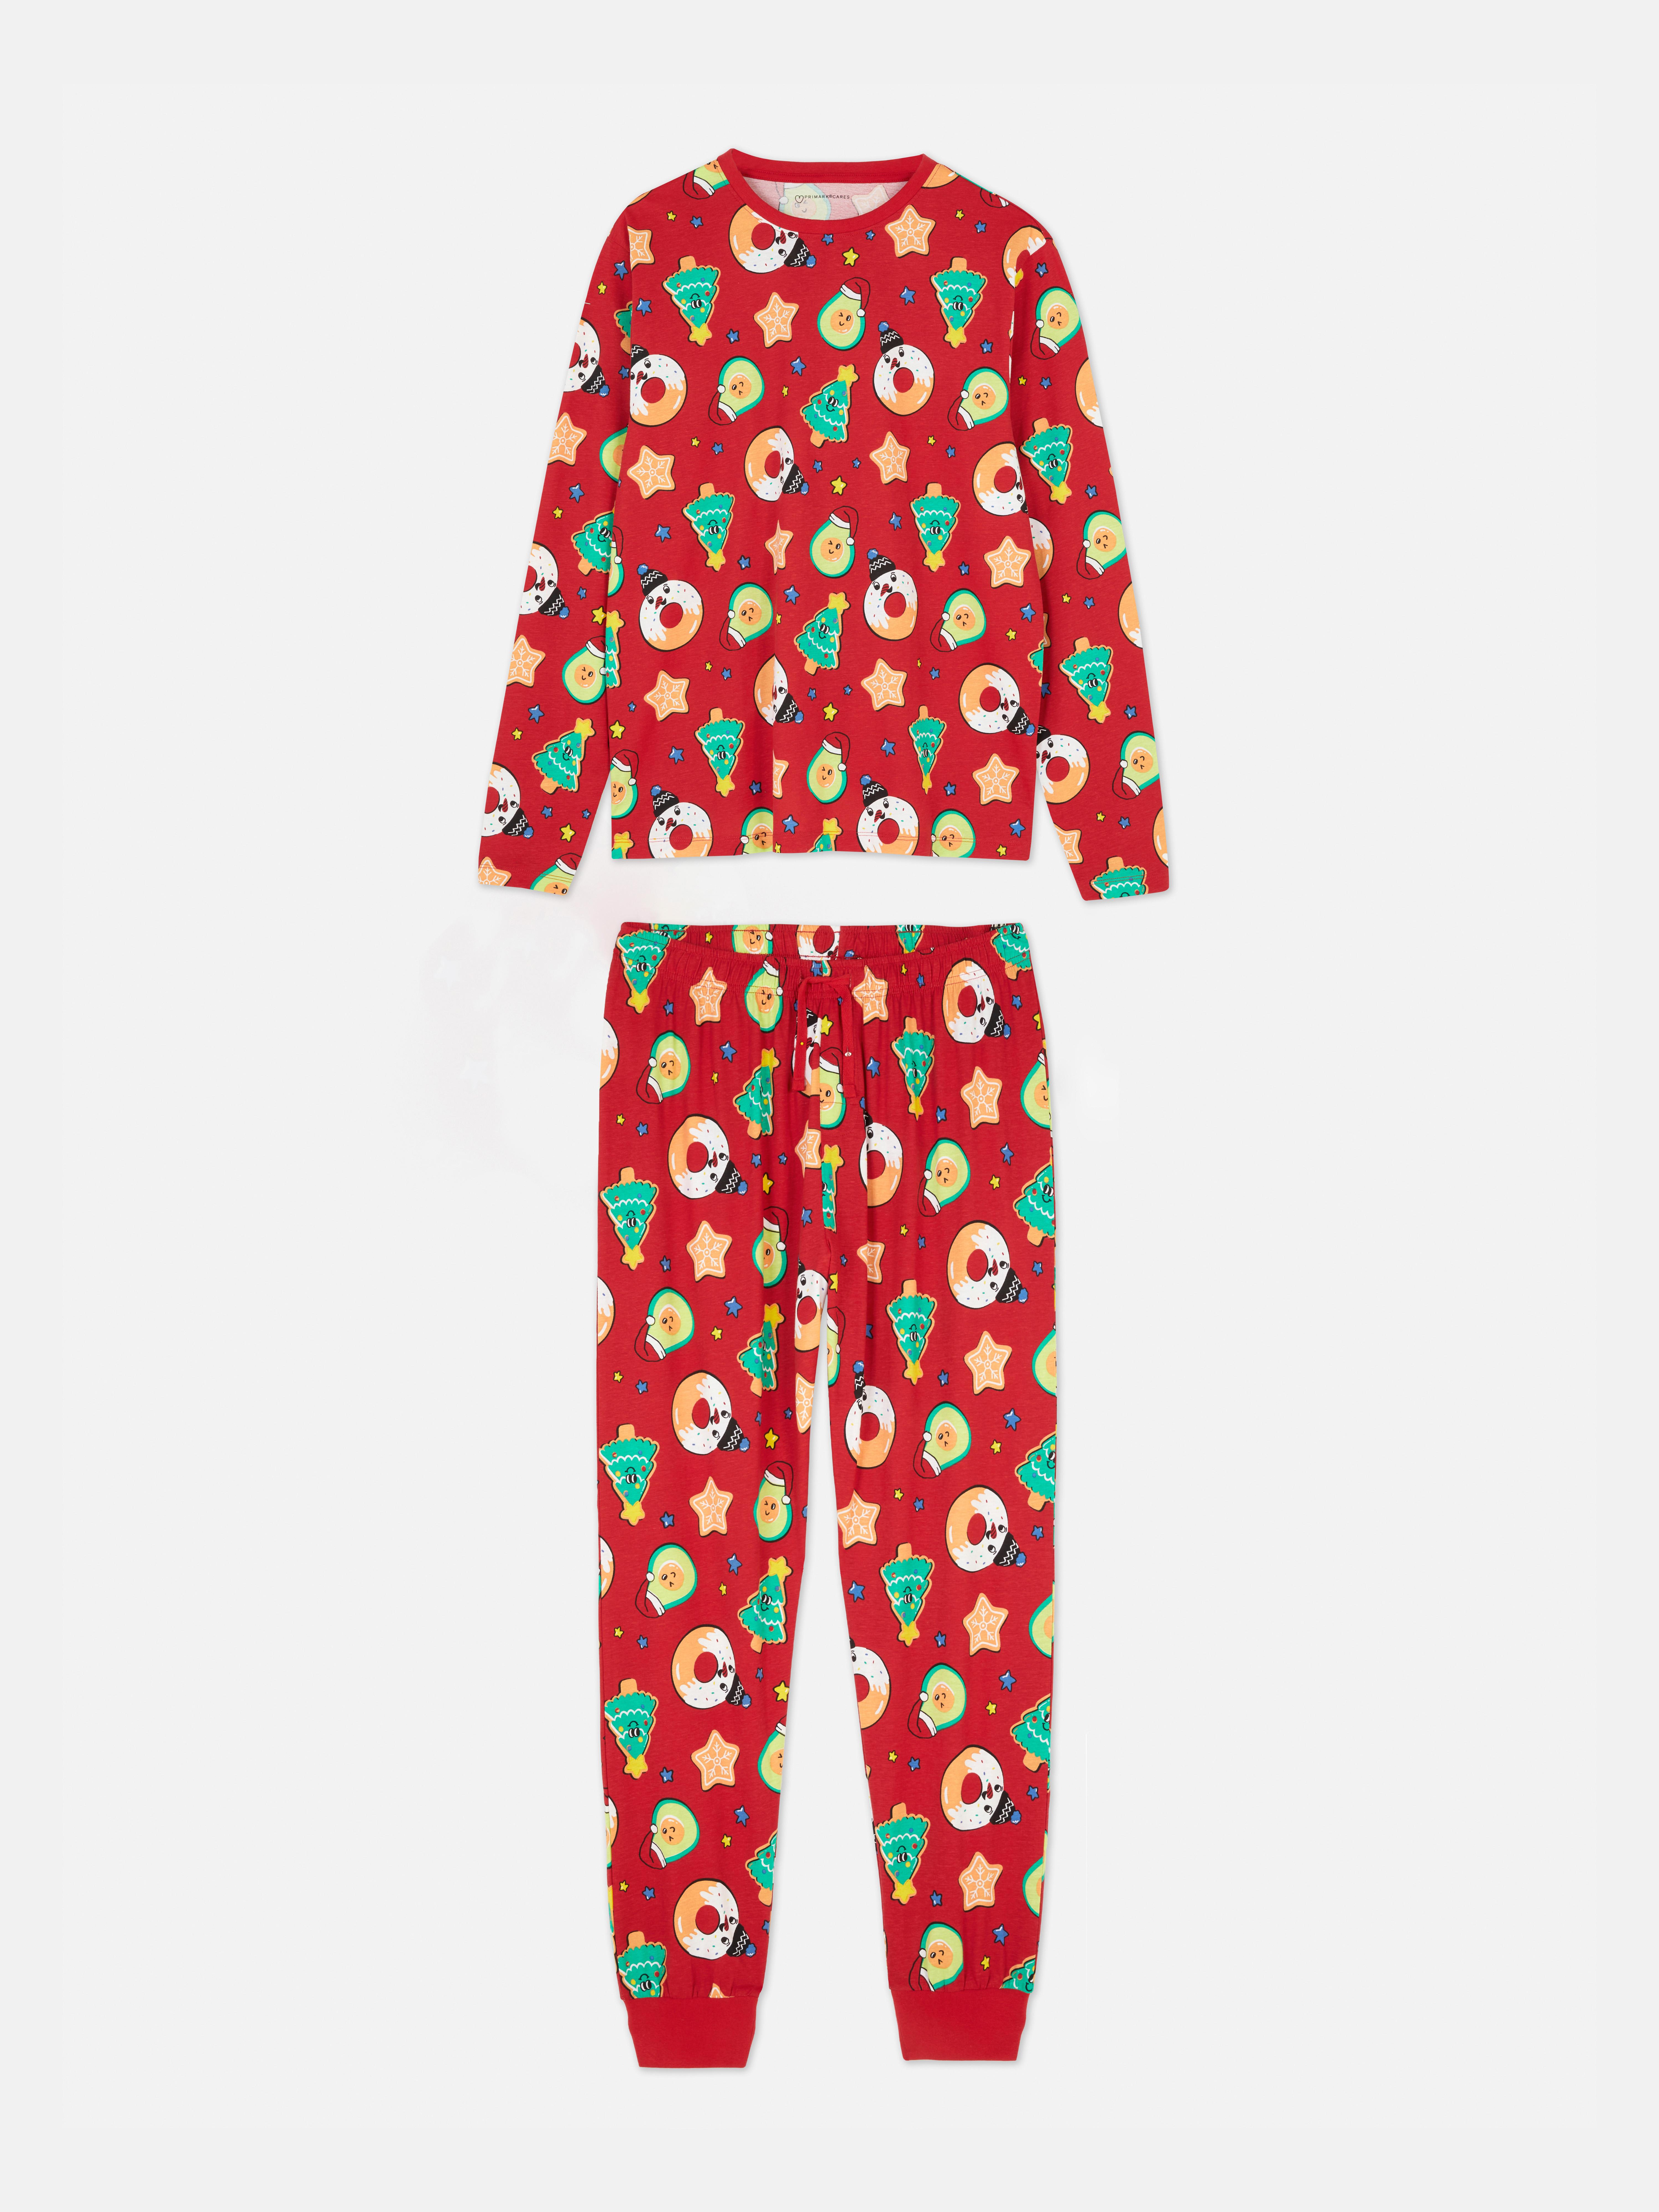 Men's Printed Jersey Christmas Family Pajamas